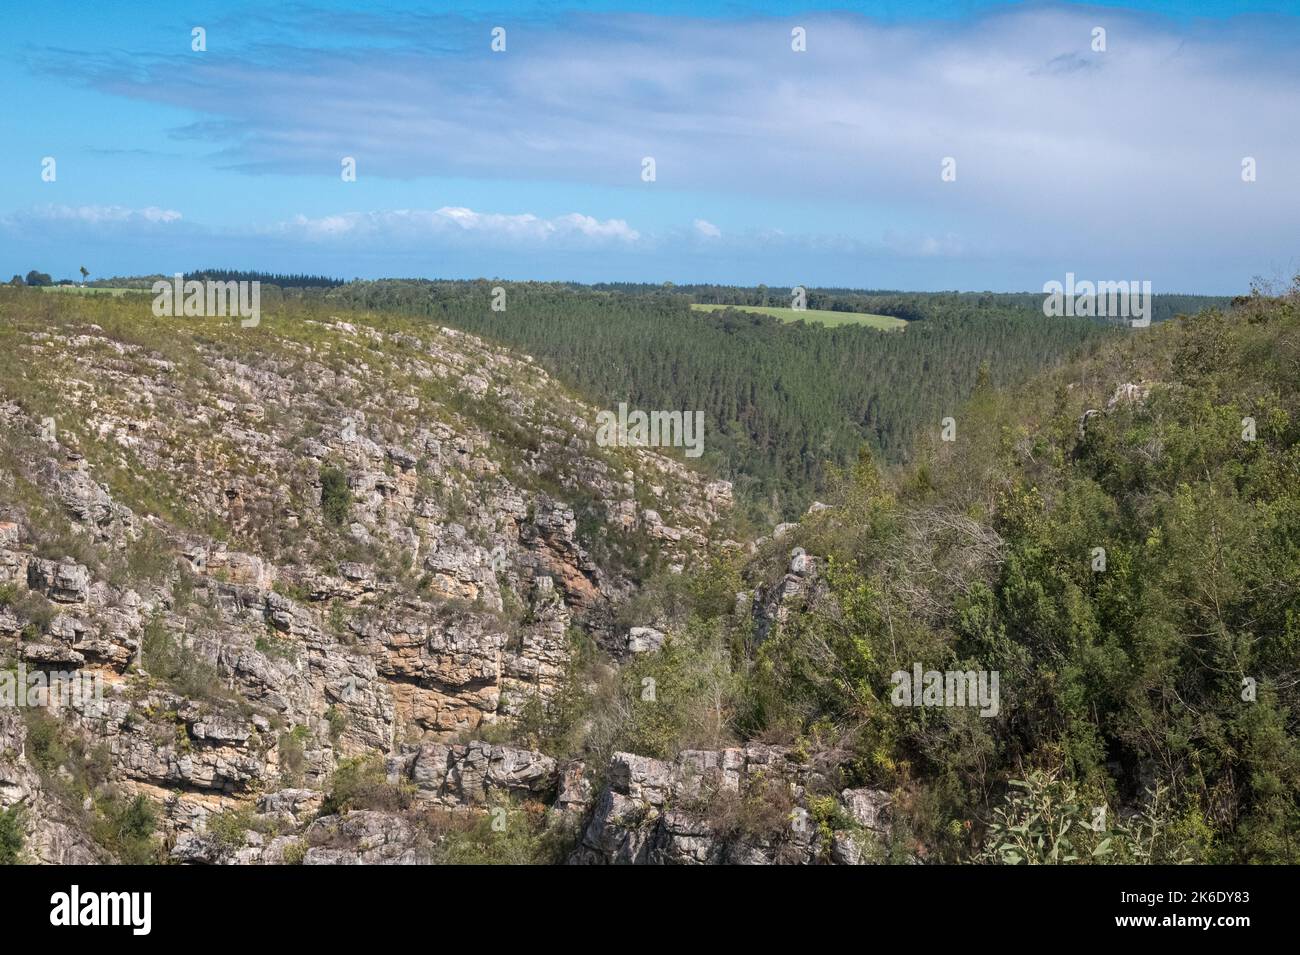 Vista panoramica dalla cima di una montagna di una zona boschiva con una verde radura circondata da alberi in una bella giornata di sole. Paesaggio naturale Foto Stock